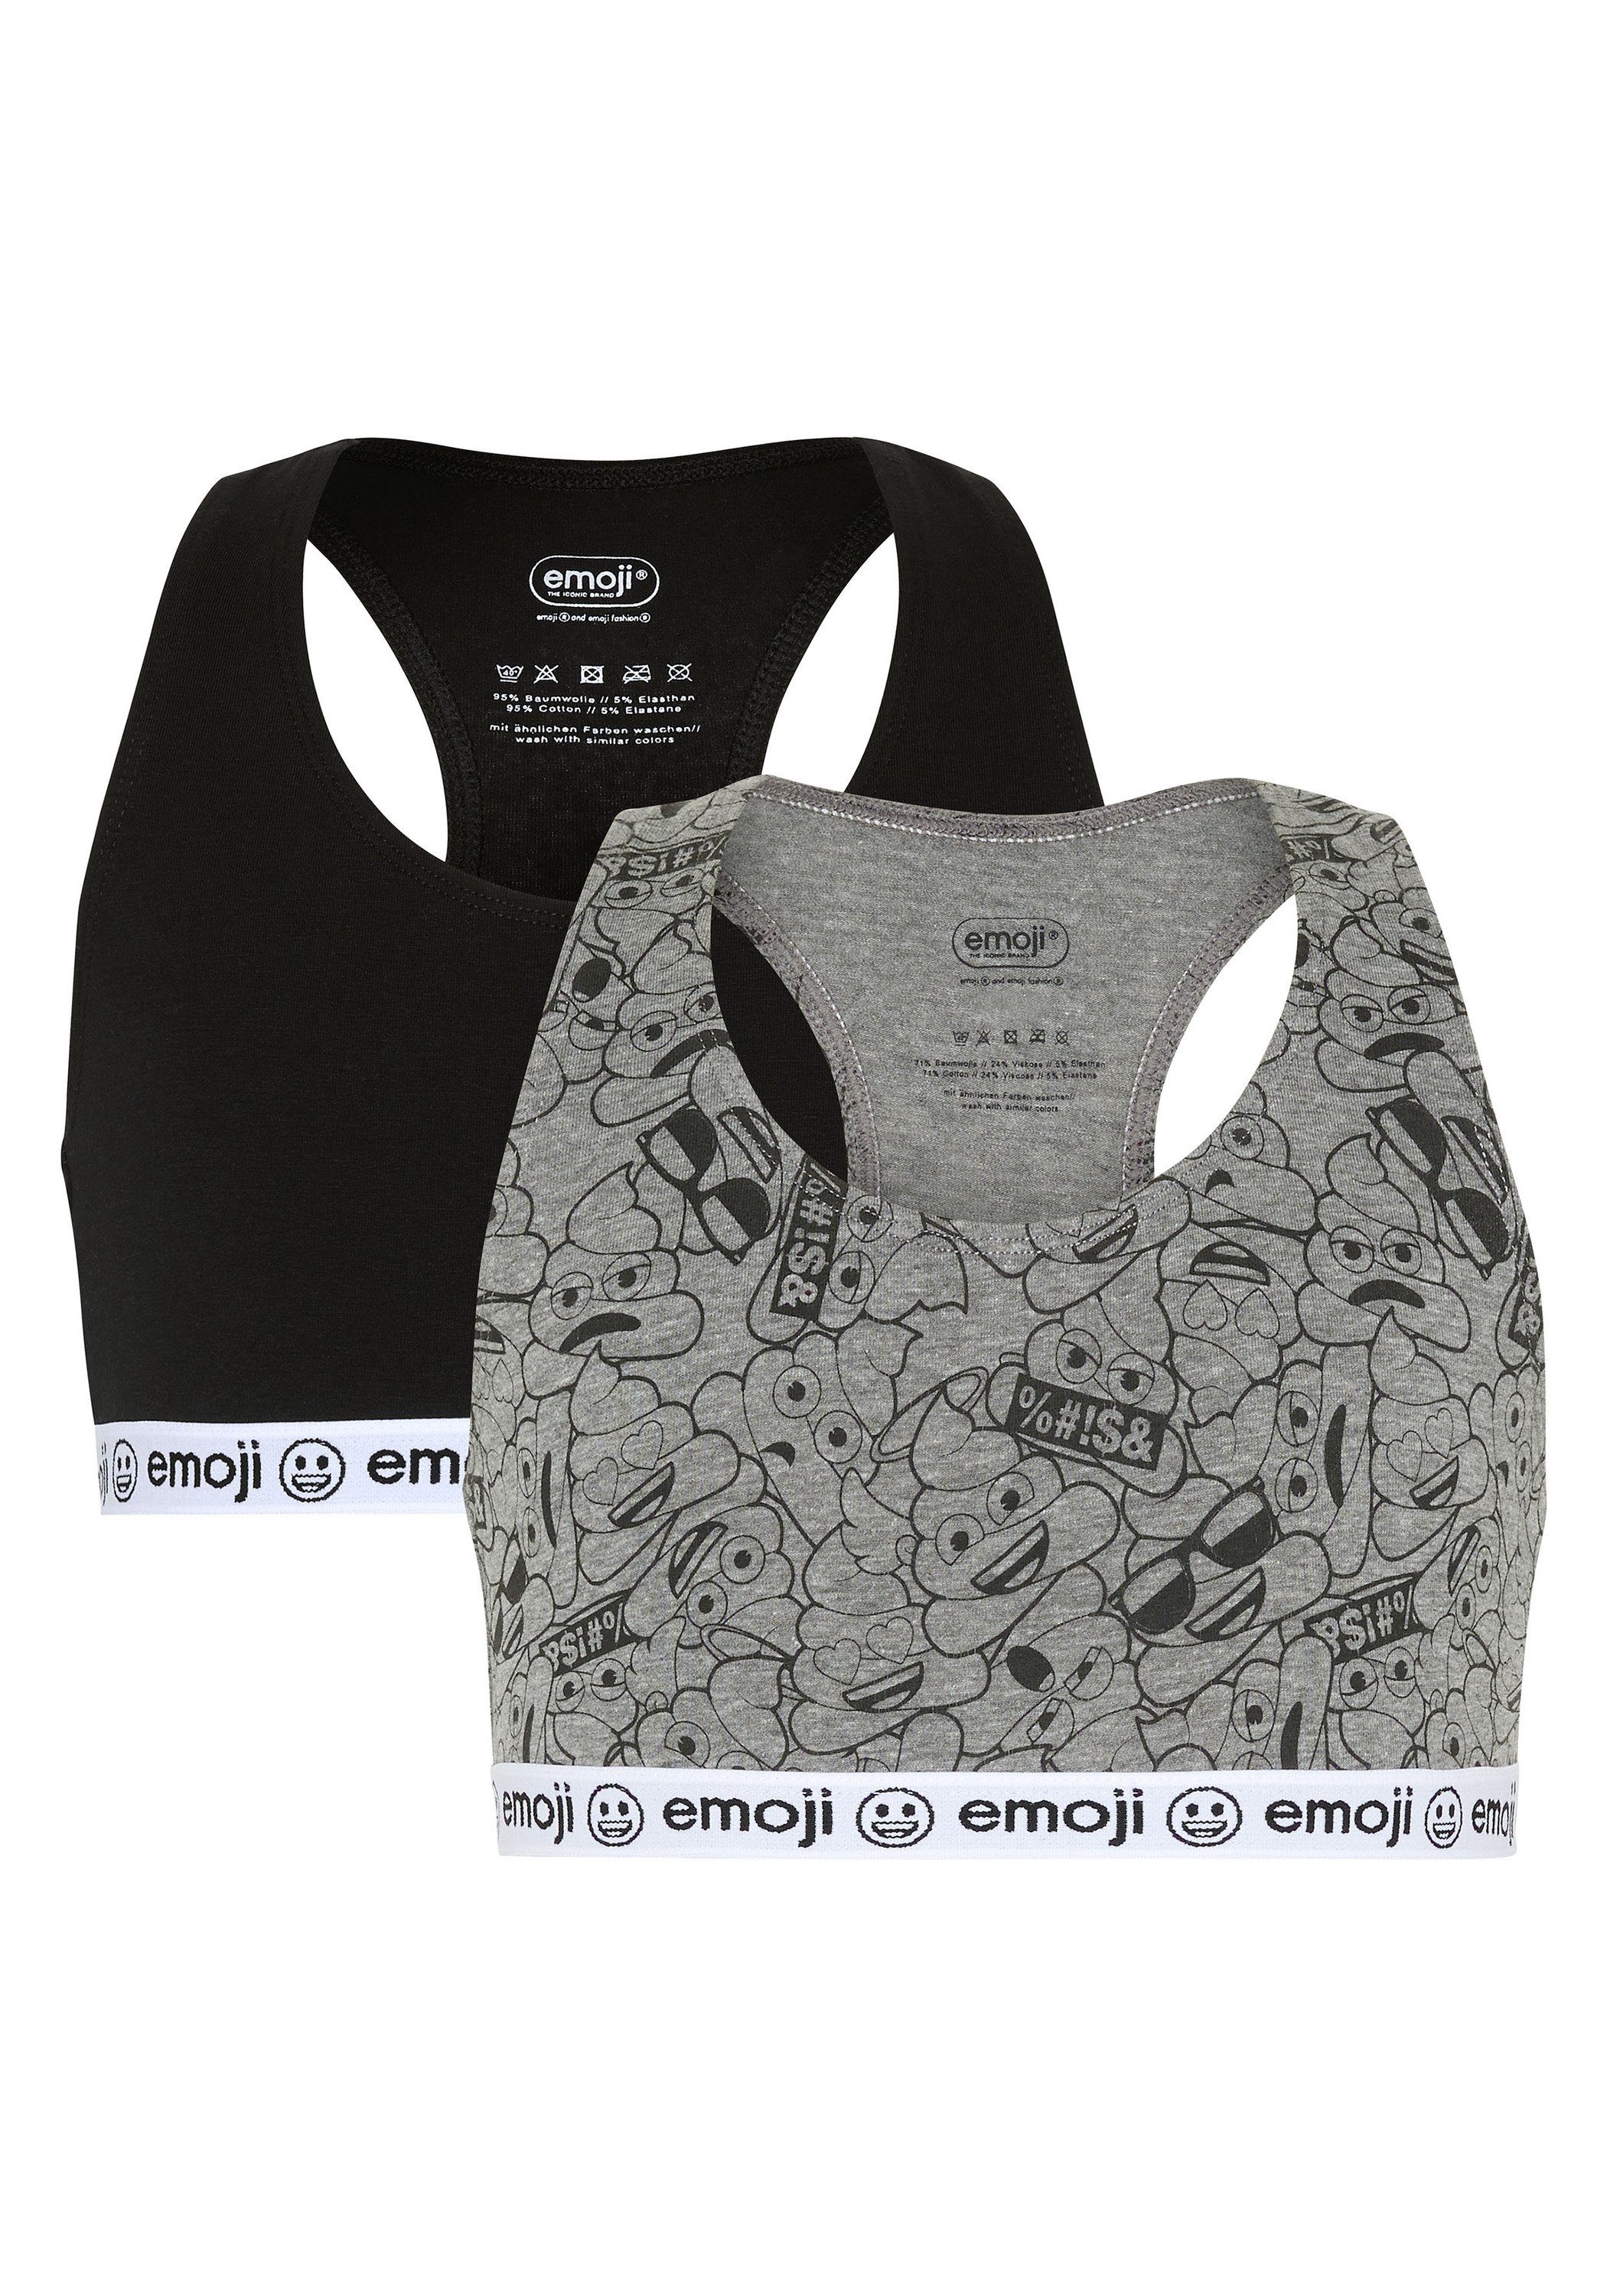 im Emoji 7590 Teenie-BH Medium mit Grey/Black elastischem Unterbrustgummi Zweierpack